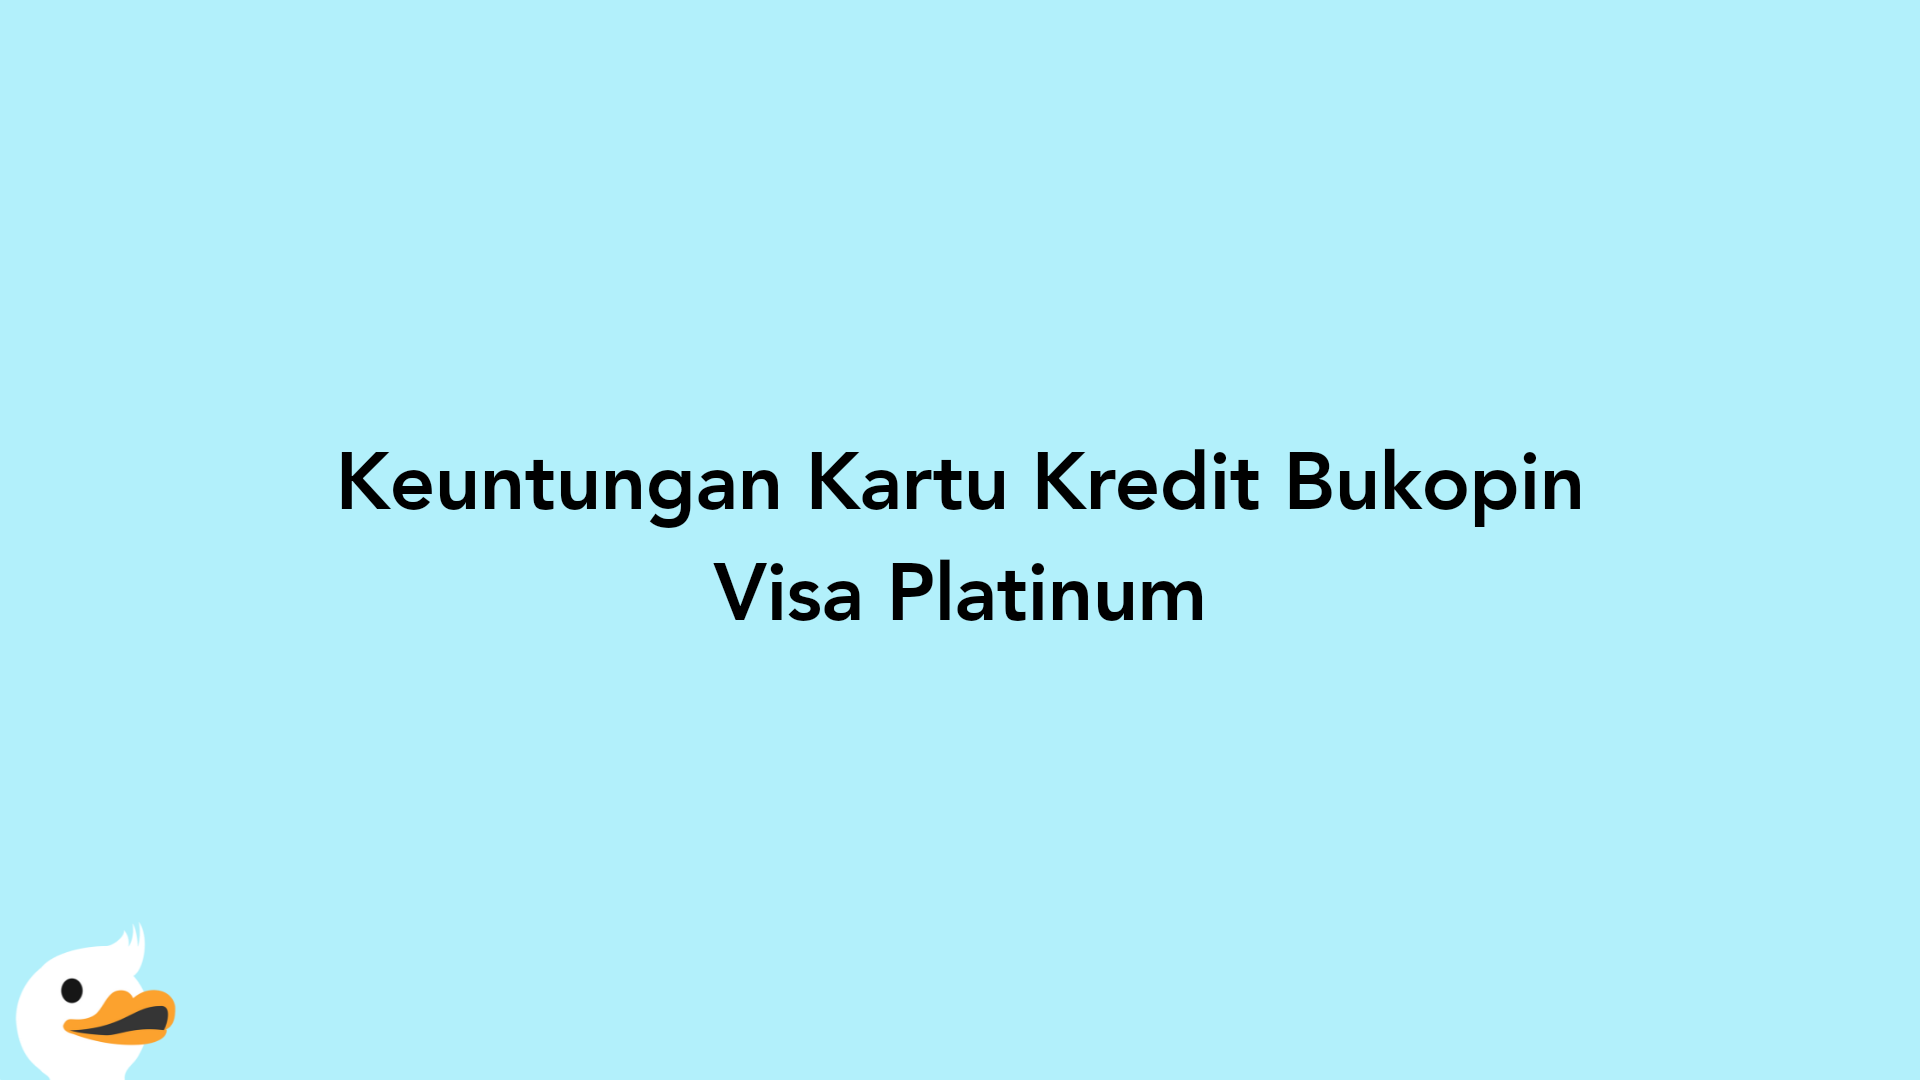 Keuntungan Kartu Kredit Bukopin Visa Platinum